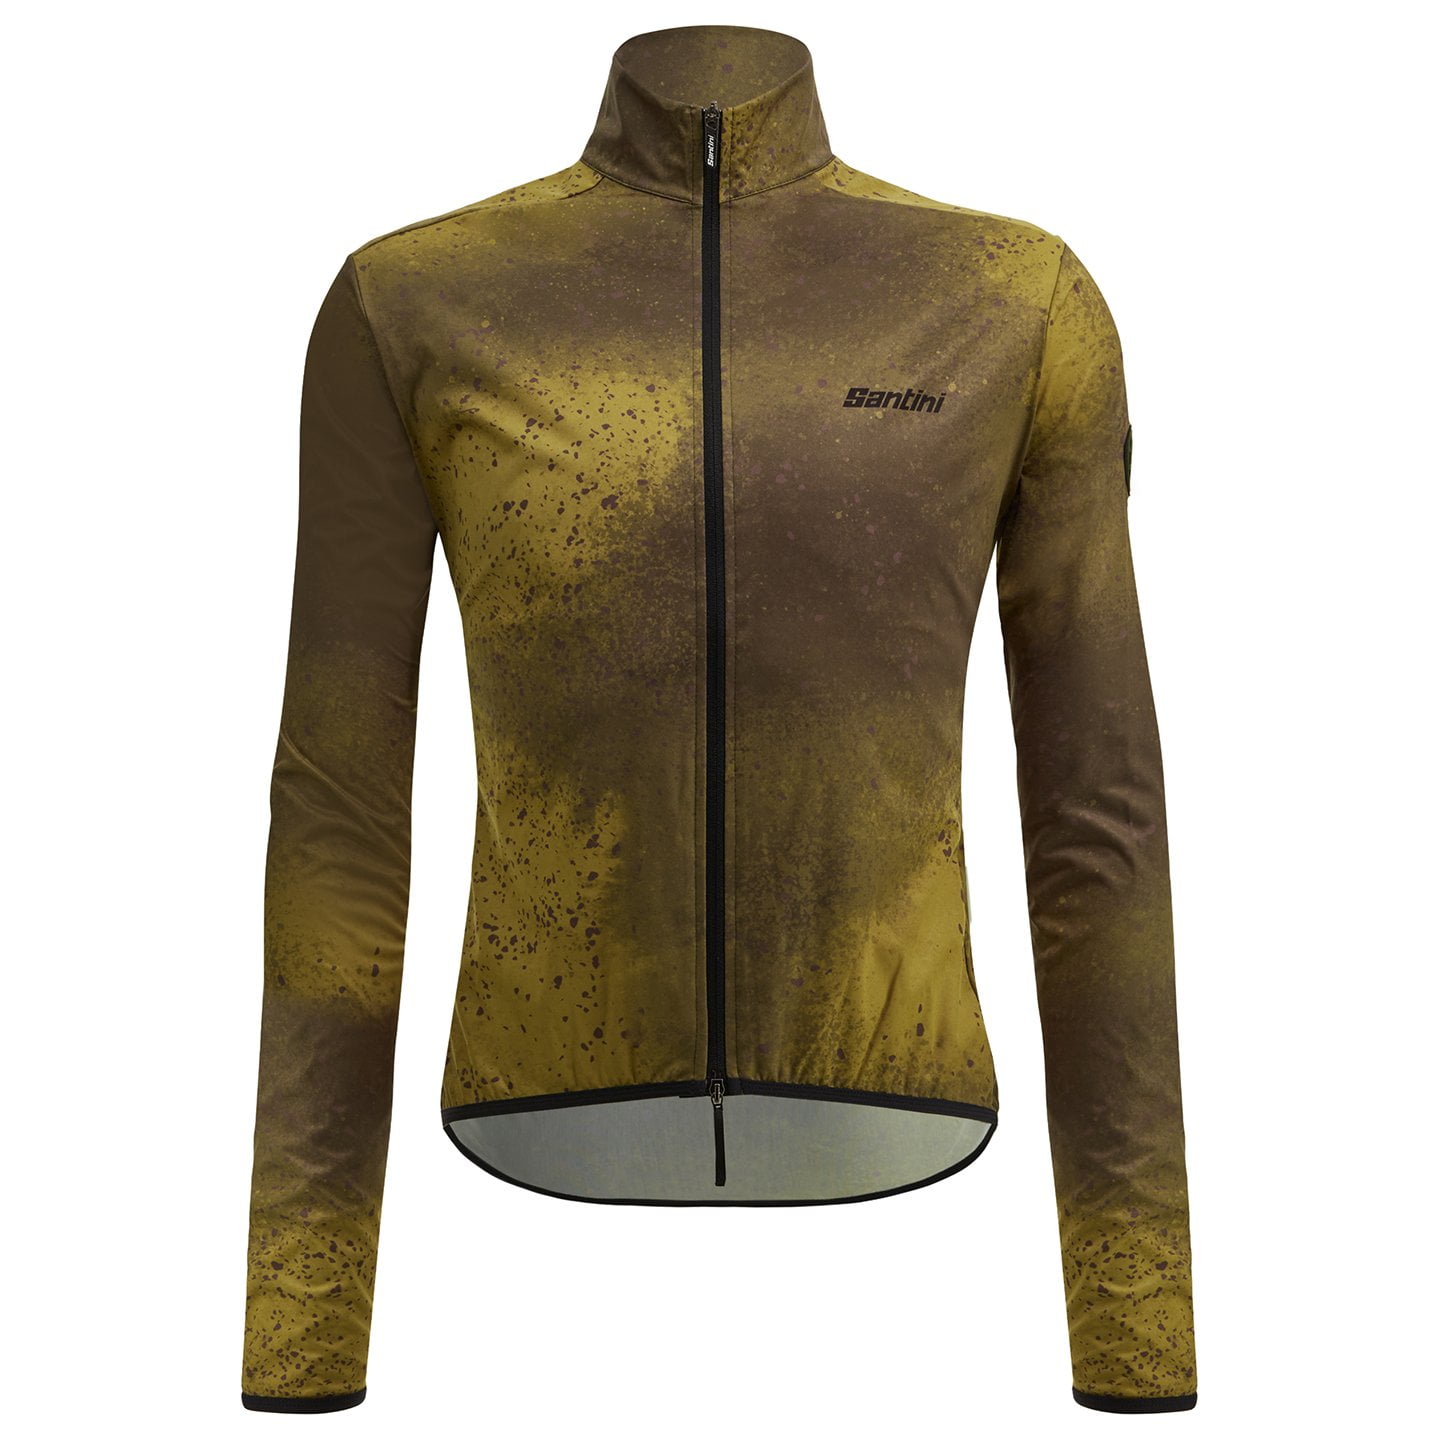 SANTINI Fango Wind Jacket Wind Jacket, for men, size M, Bike jacket, Cycling clothing